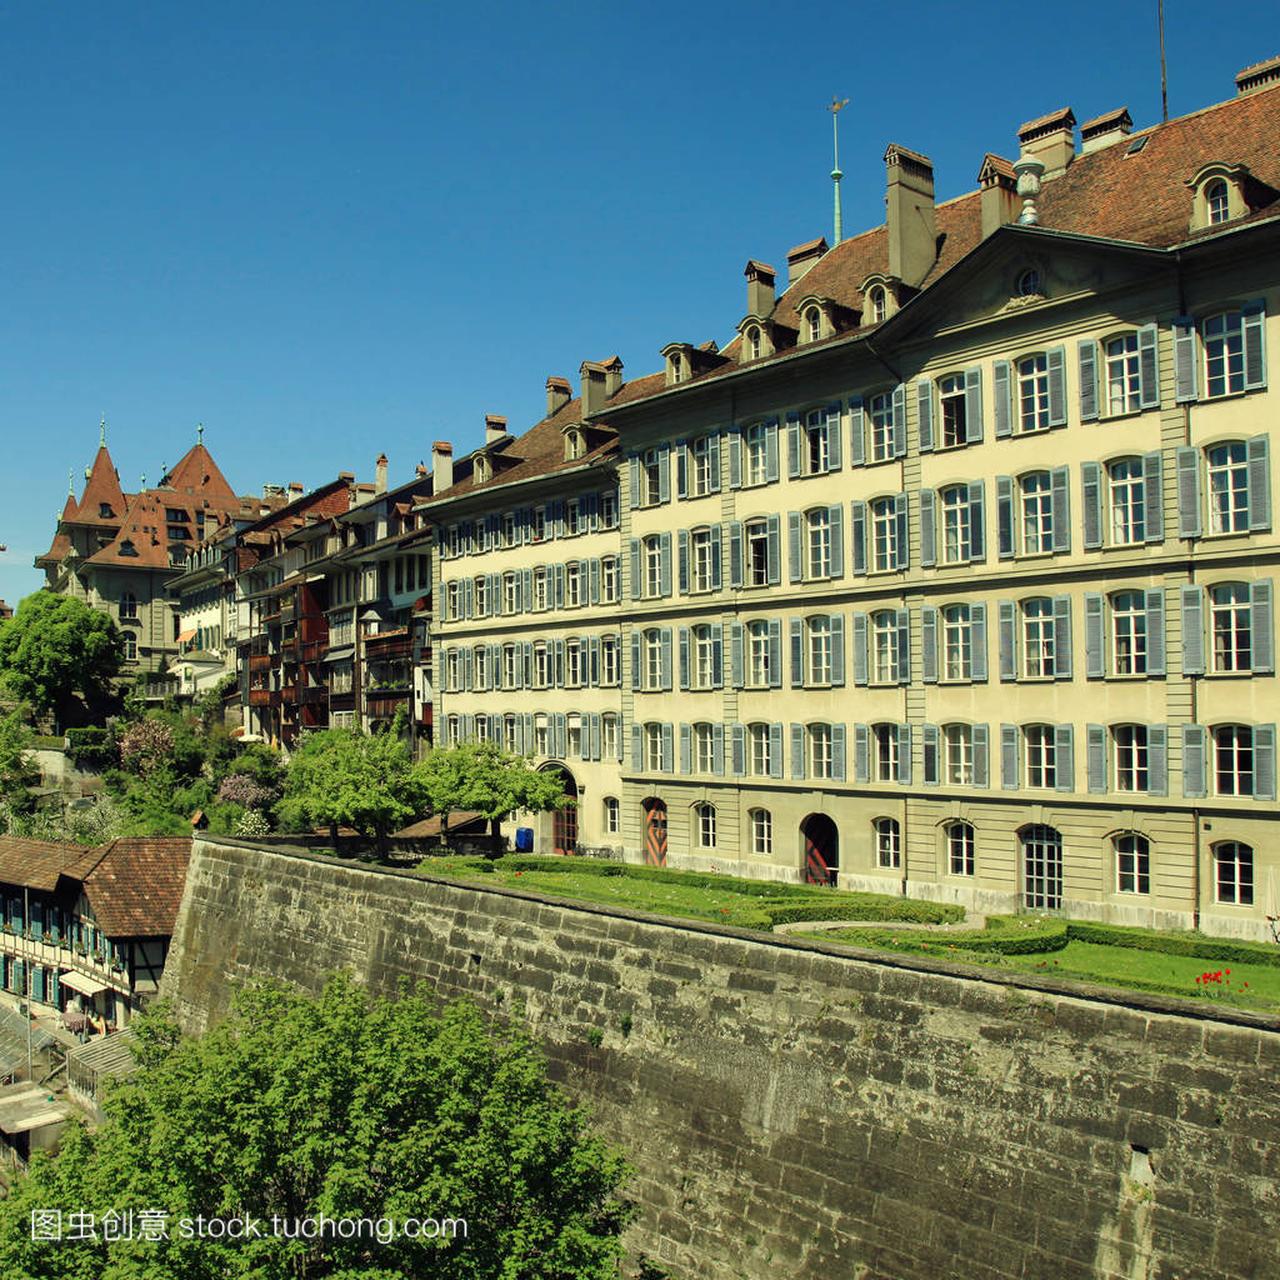 伯尔尼旧镇、 瑞士首都和教科文组织世界遗产